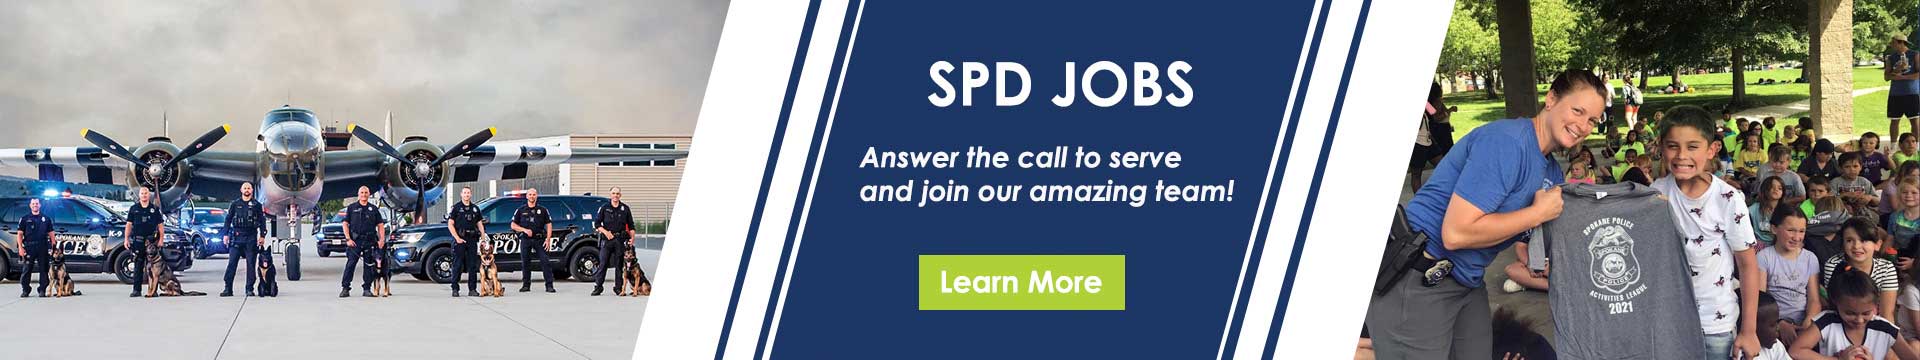 SPD Jobs Banner